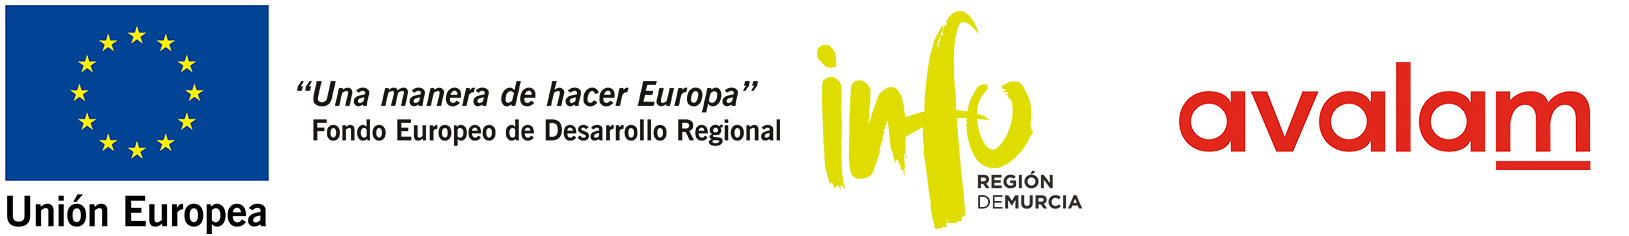 Unión Europea - Fondo Europeo de Desarrollo Regional 'Una manera de hacer Europa' - Instituto de Fomento de la Región de Murcia - avalam